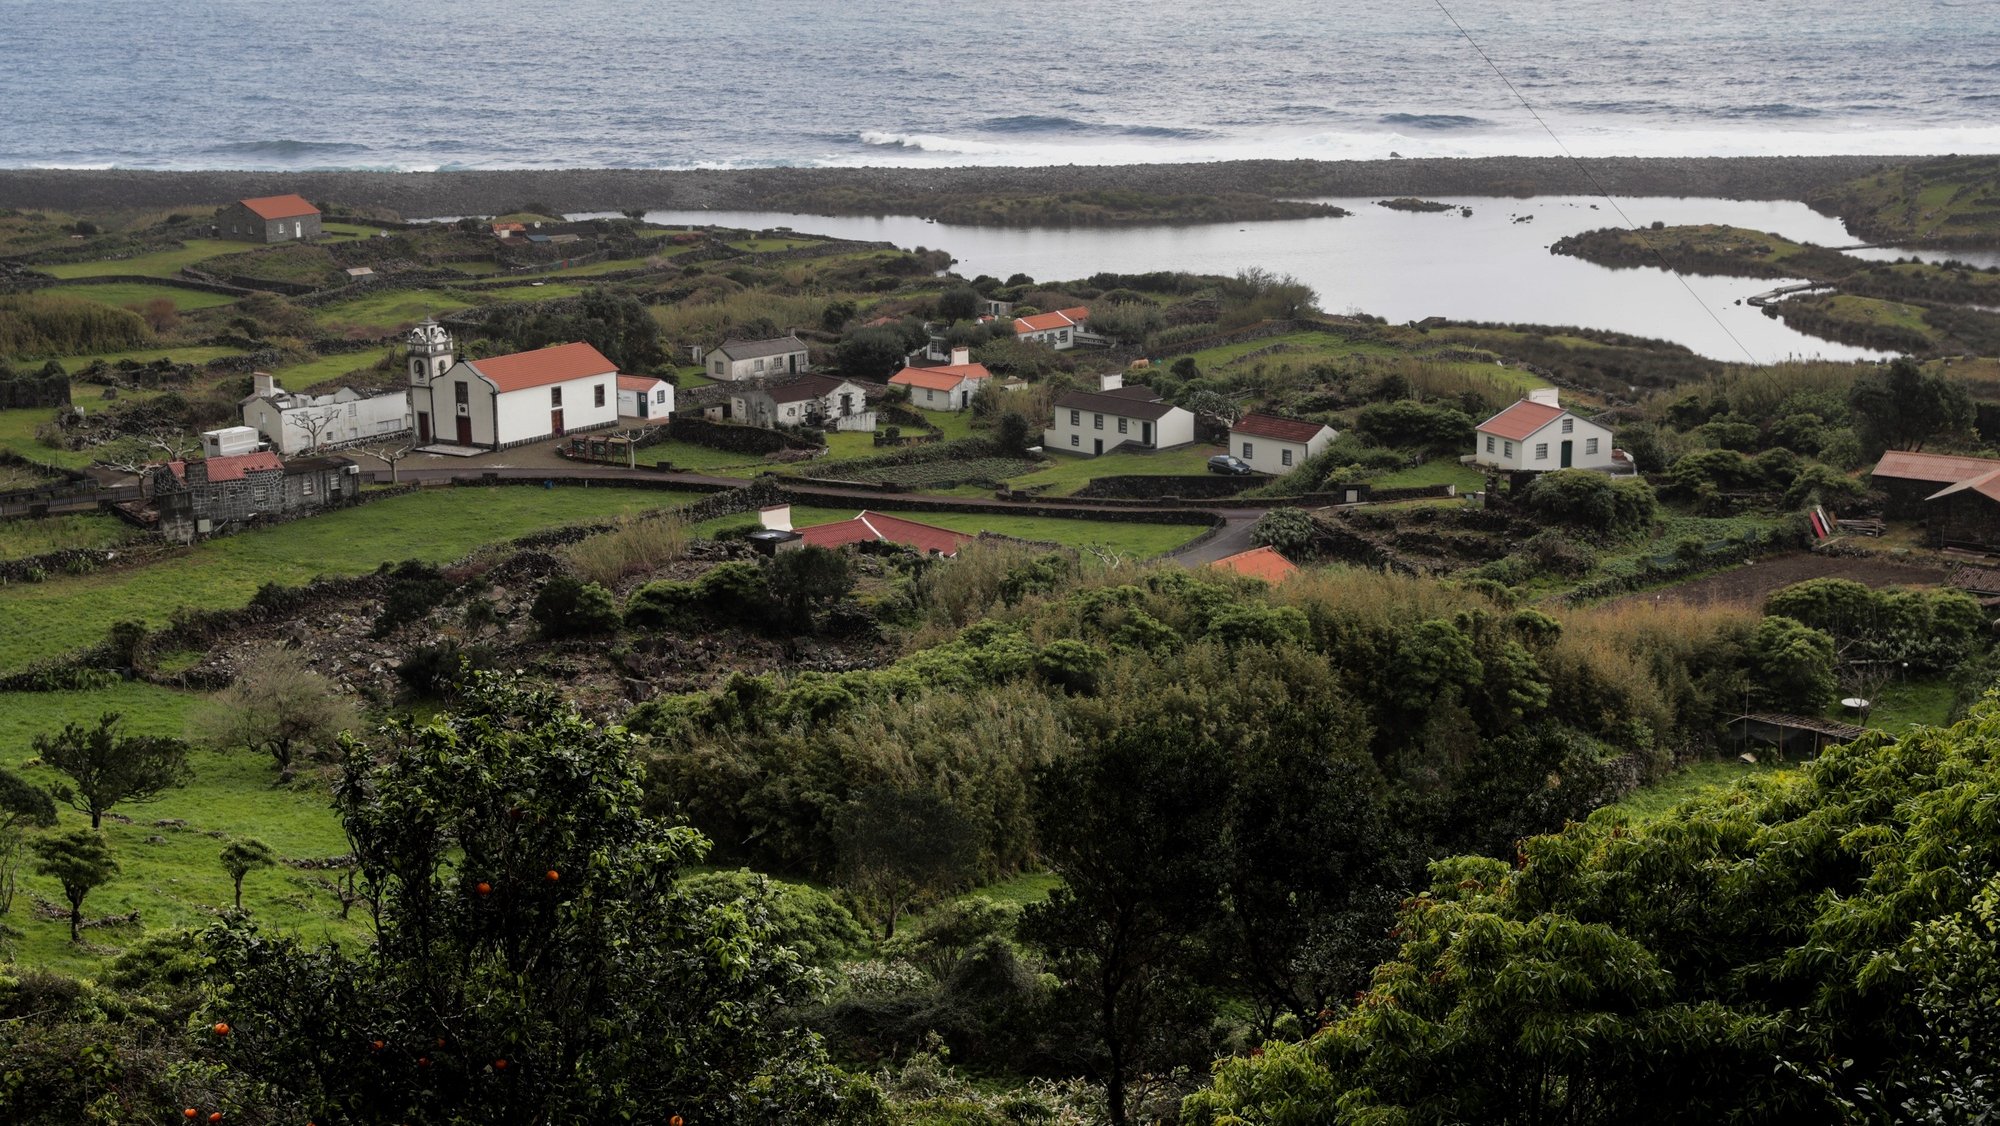 Vista geral da Fajã de Cubres, ilha de São Jorge, Açores, Portugal. TIAGO PETINGA/LUSA